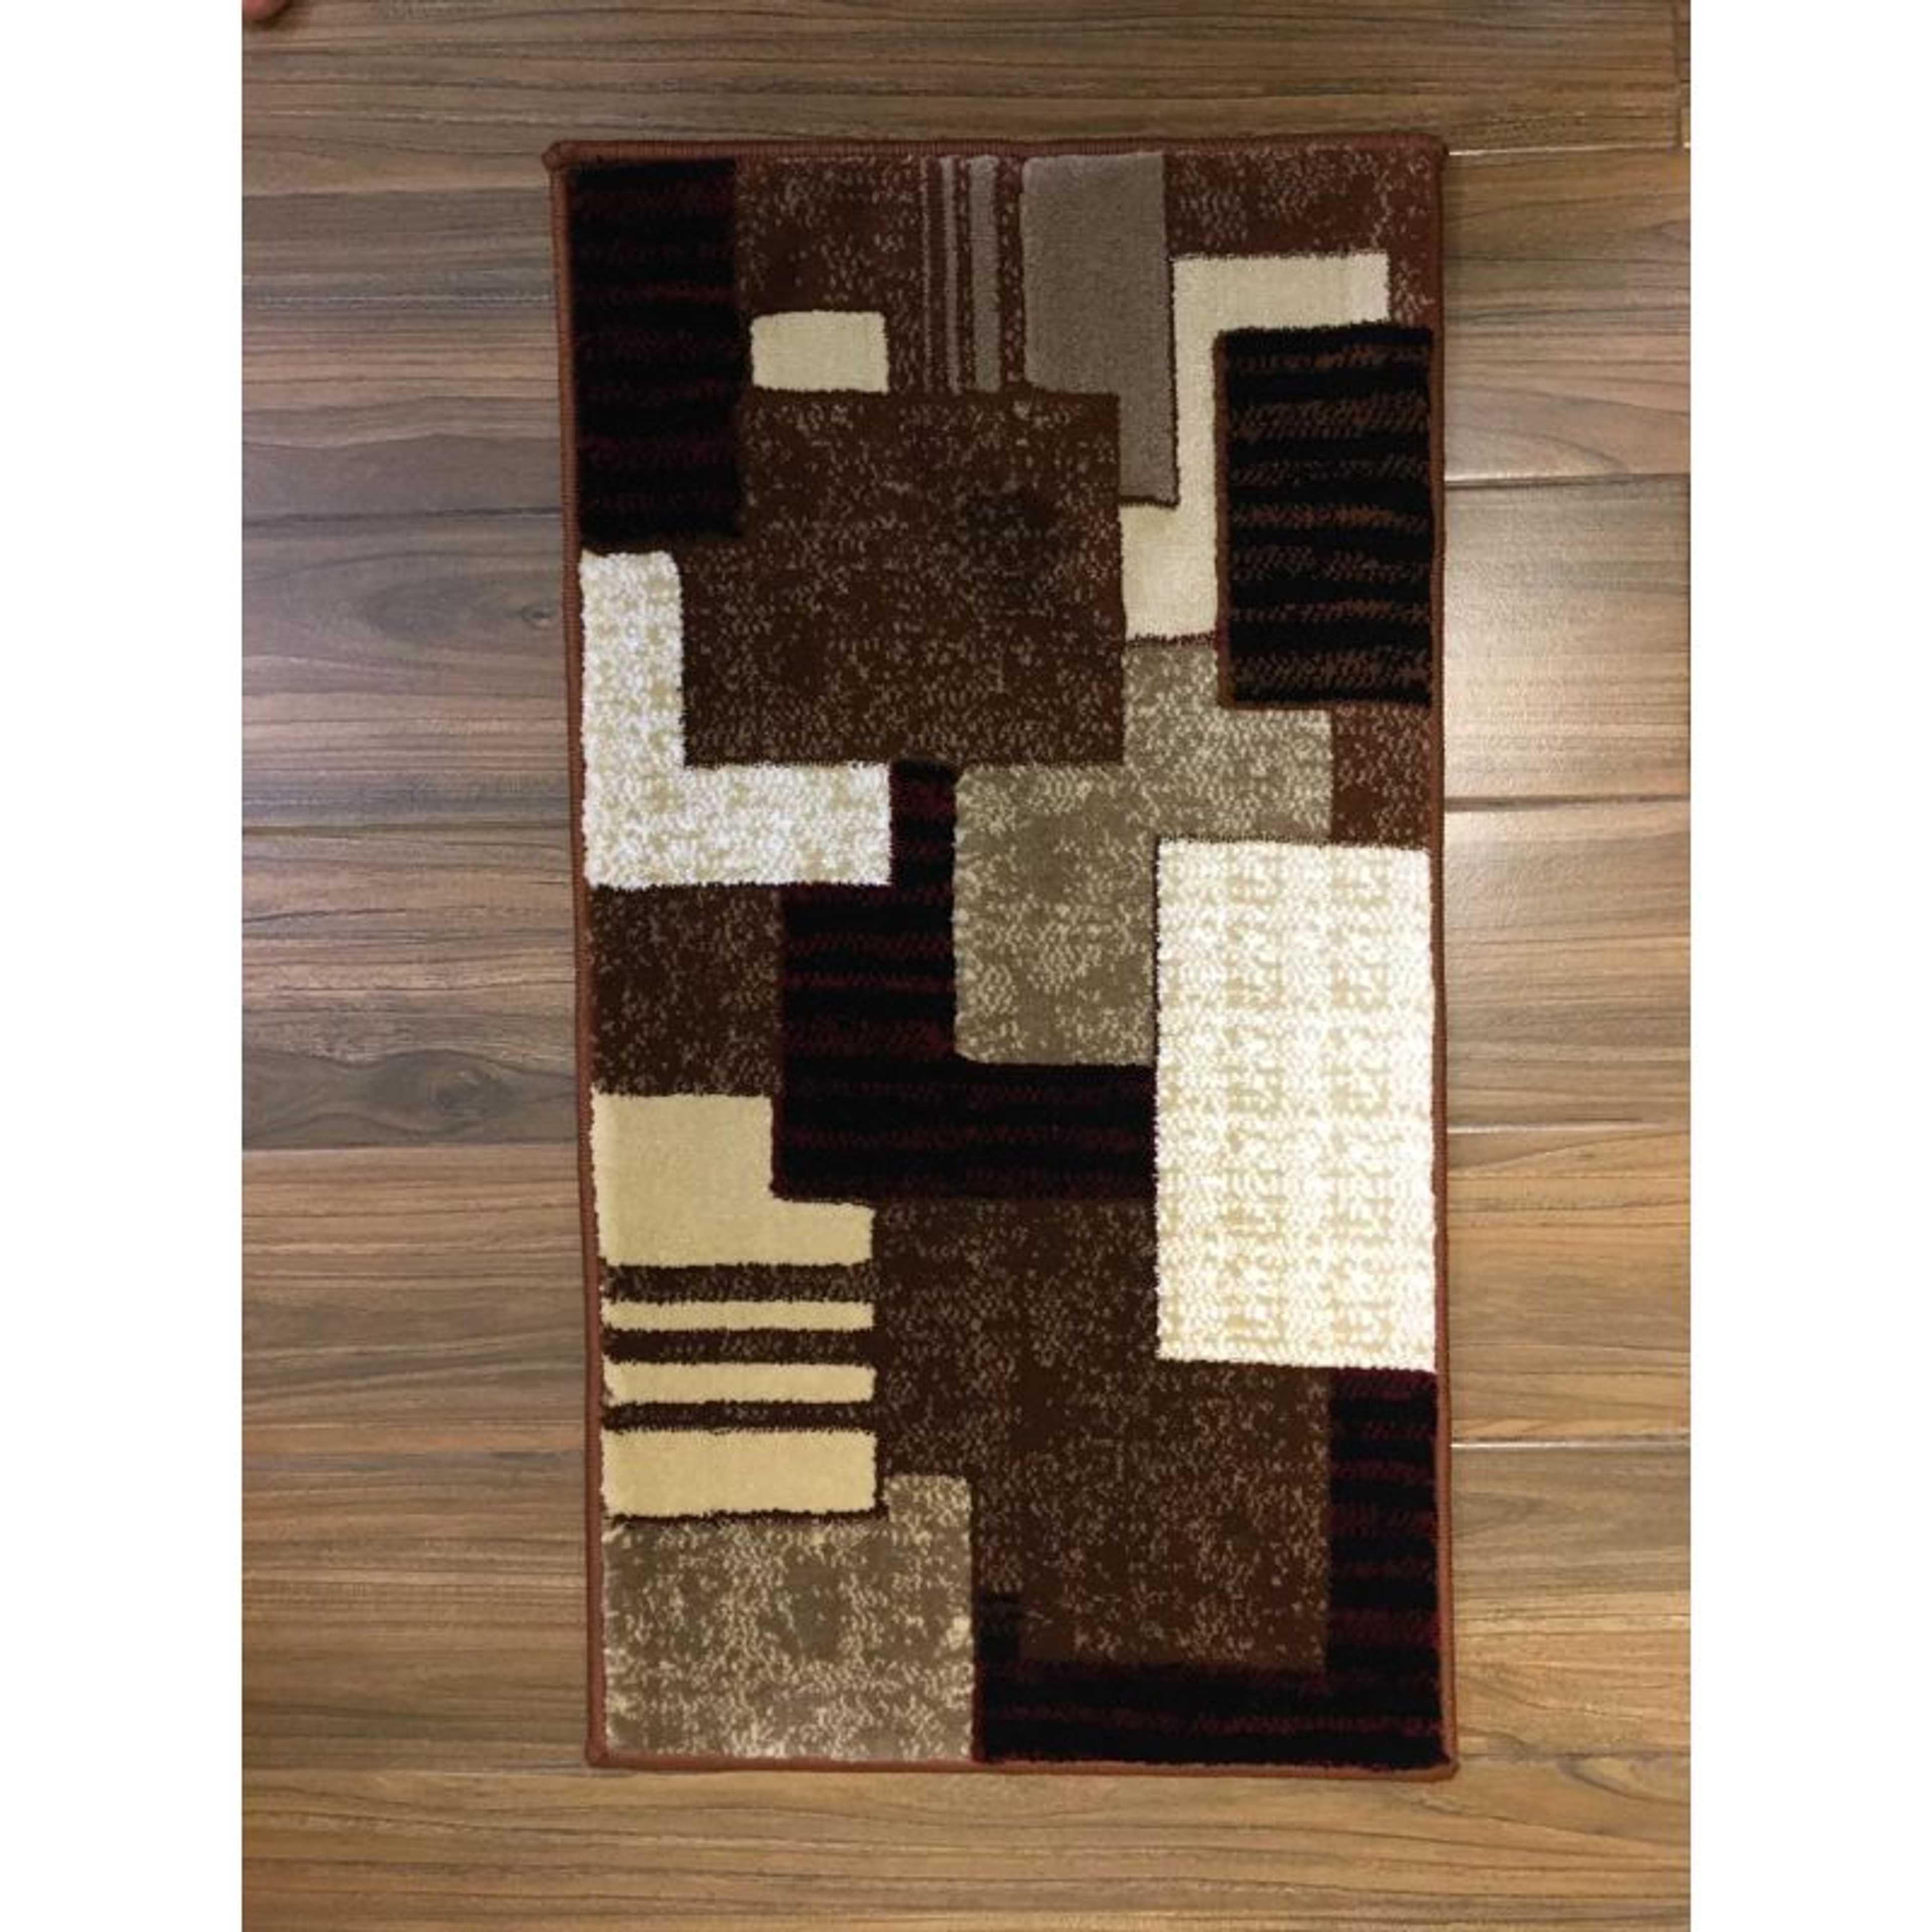 Turkish Carpet Stuff Bedroom Door Mats | Floor Mats | Place Mats | Indoor Mats | Imported Turkish Mats - Al Ferash